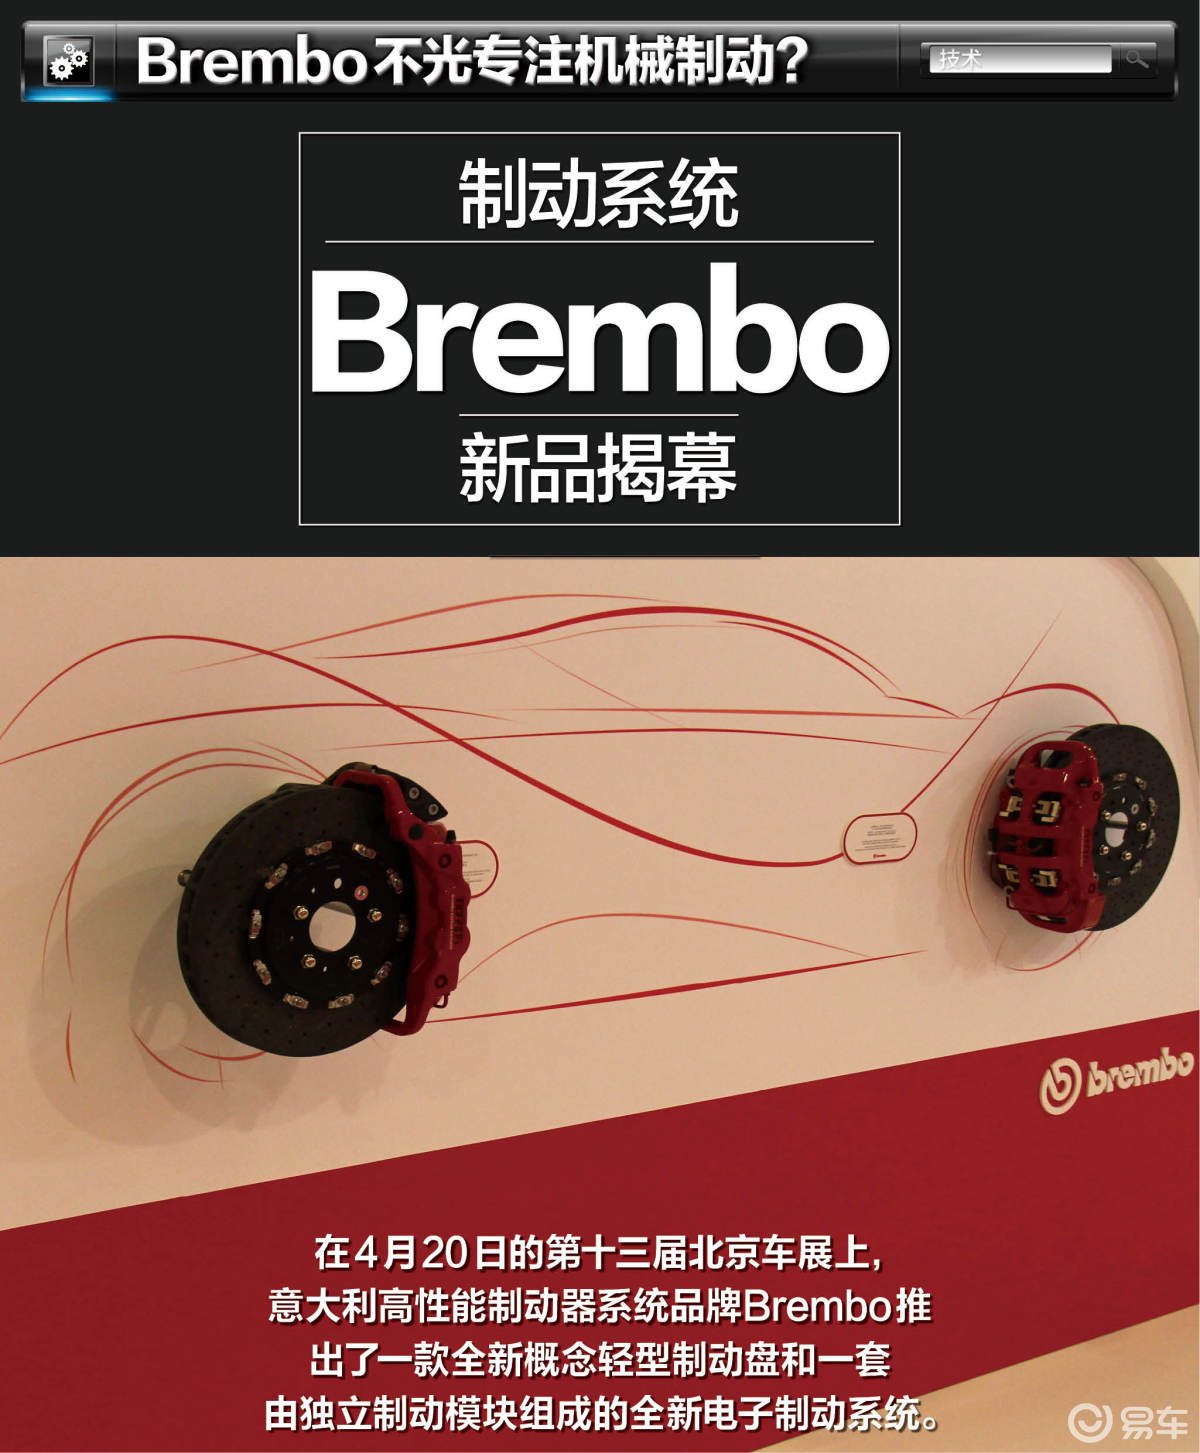 北京车展Brembo展台